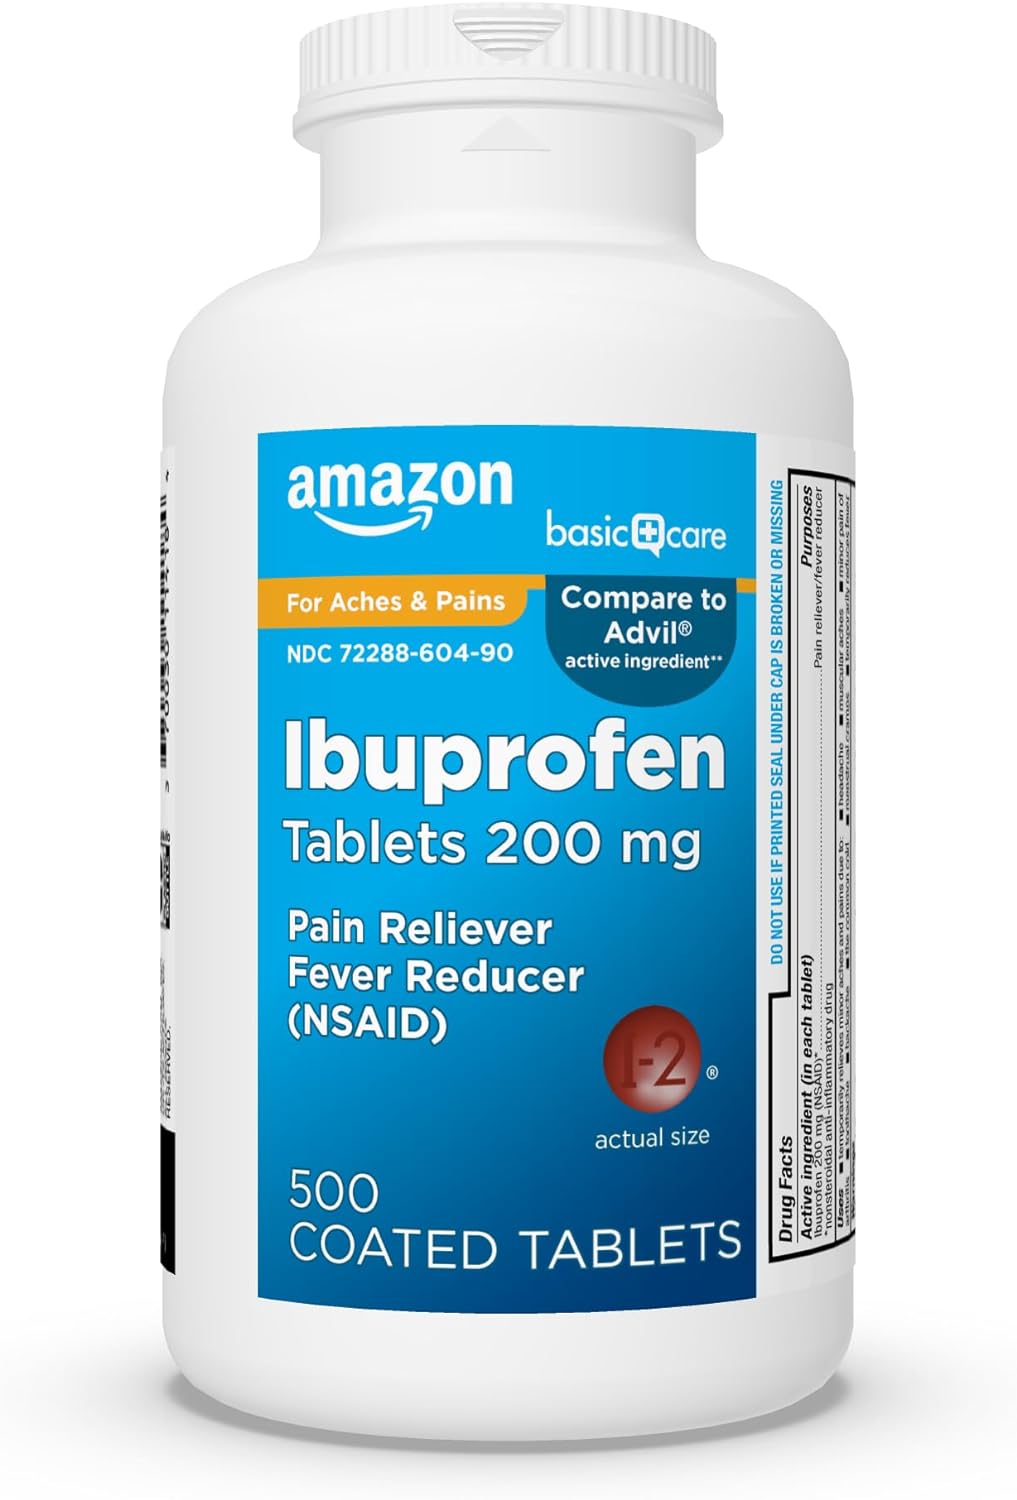 Amazon Basic Care Ibuprofen Tablets 200 mg